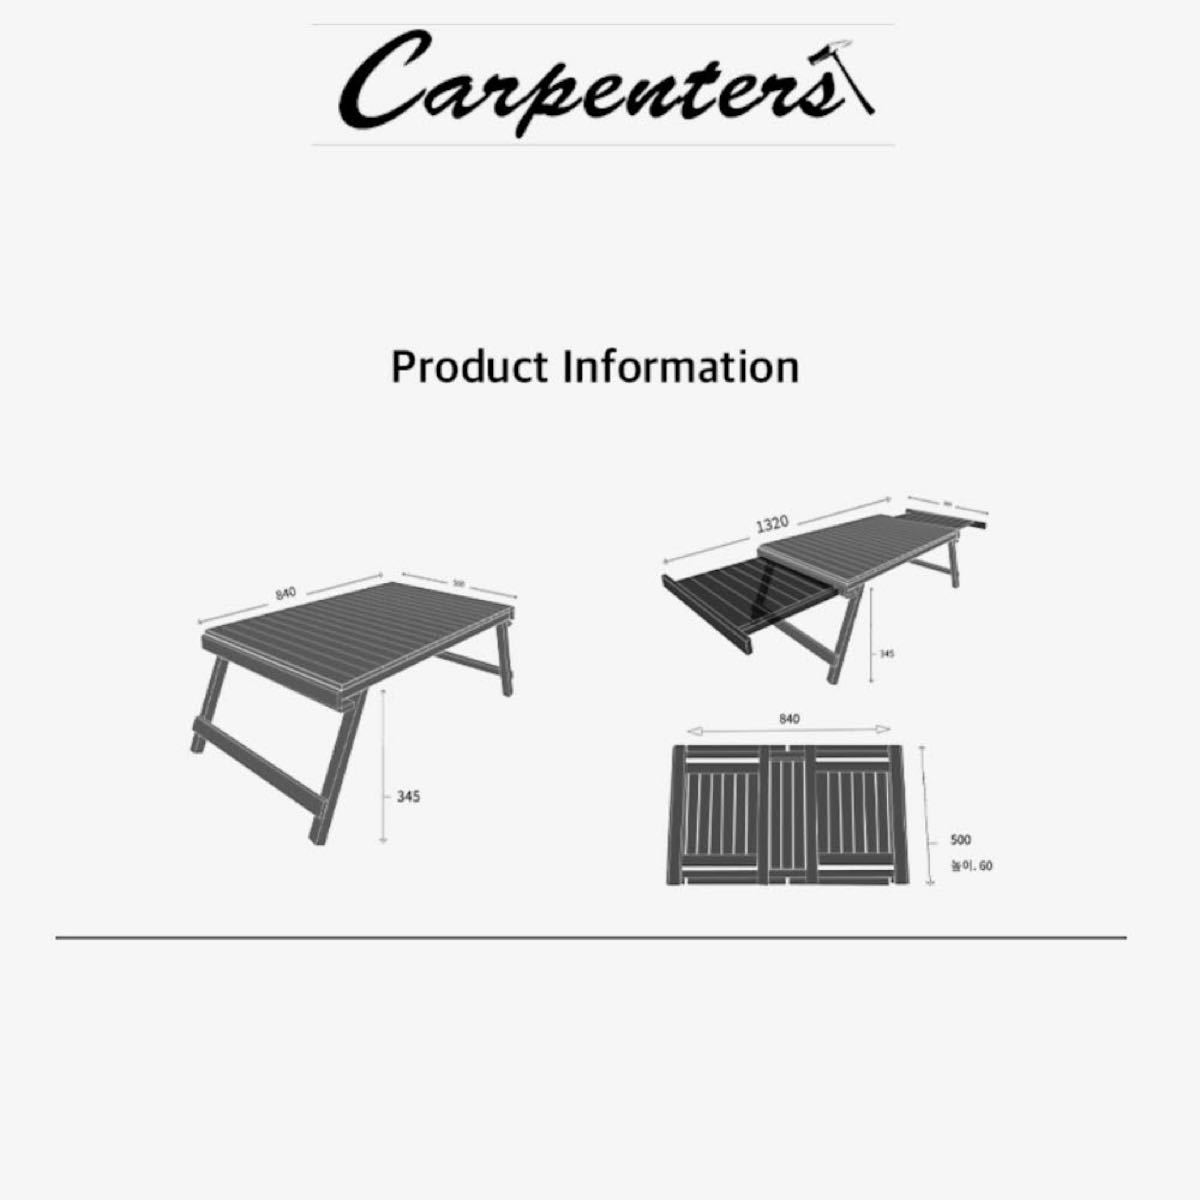 カーペンターズ Carpenters Extension Table エクステンションテーブル ミニテーブル アウトドアテーブル